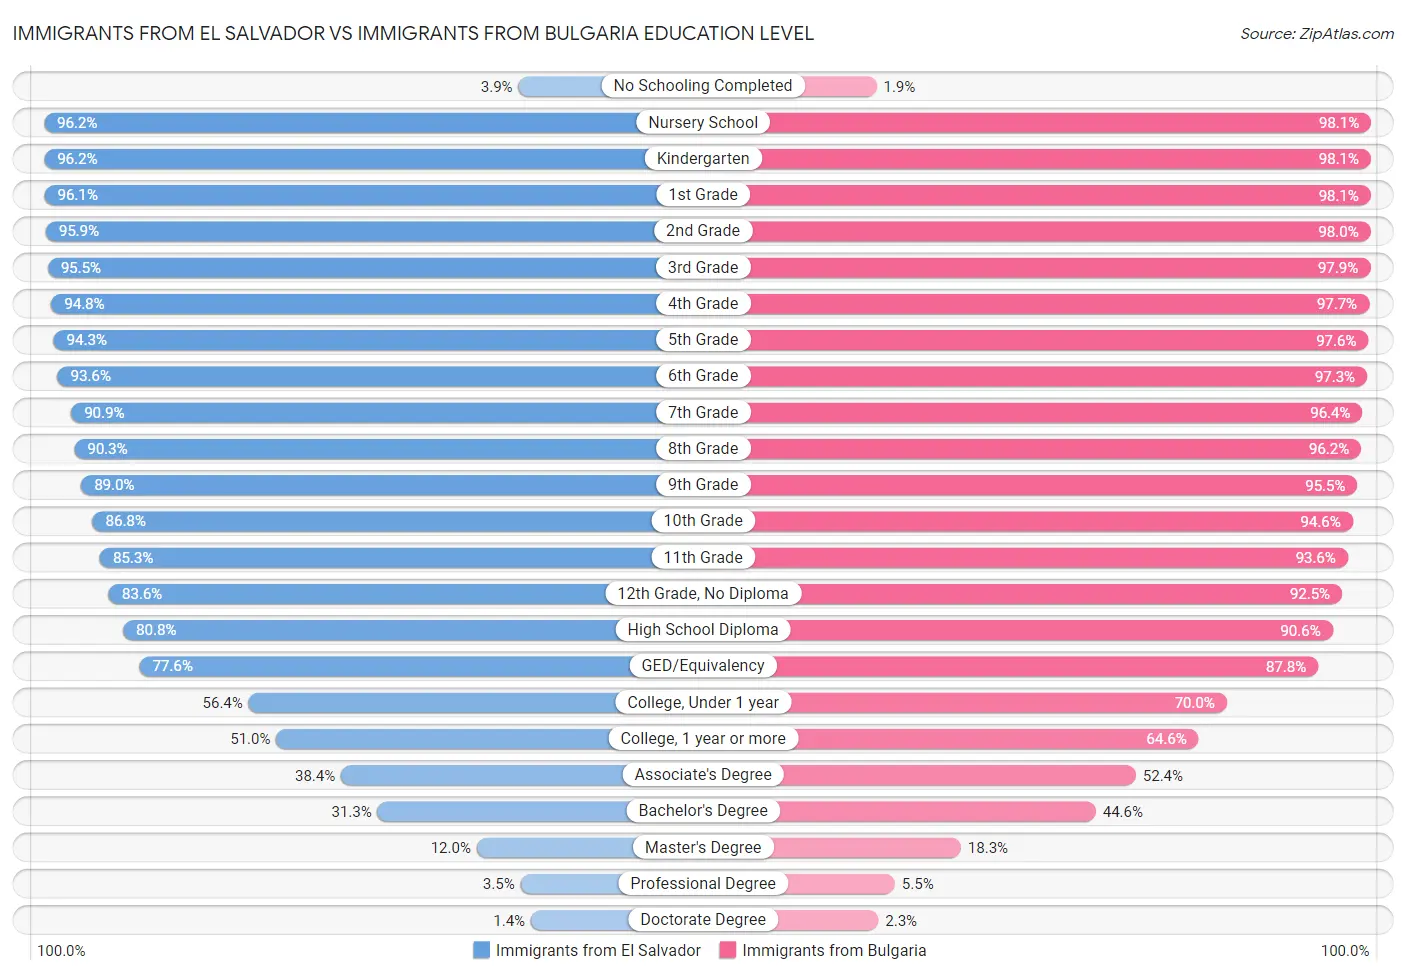 Immigrants from El Salvador vs Immigrants from Bulgaria Education Level